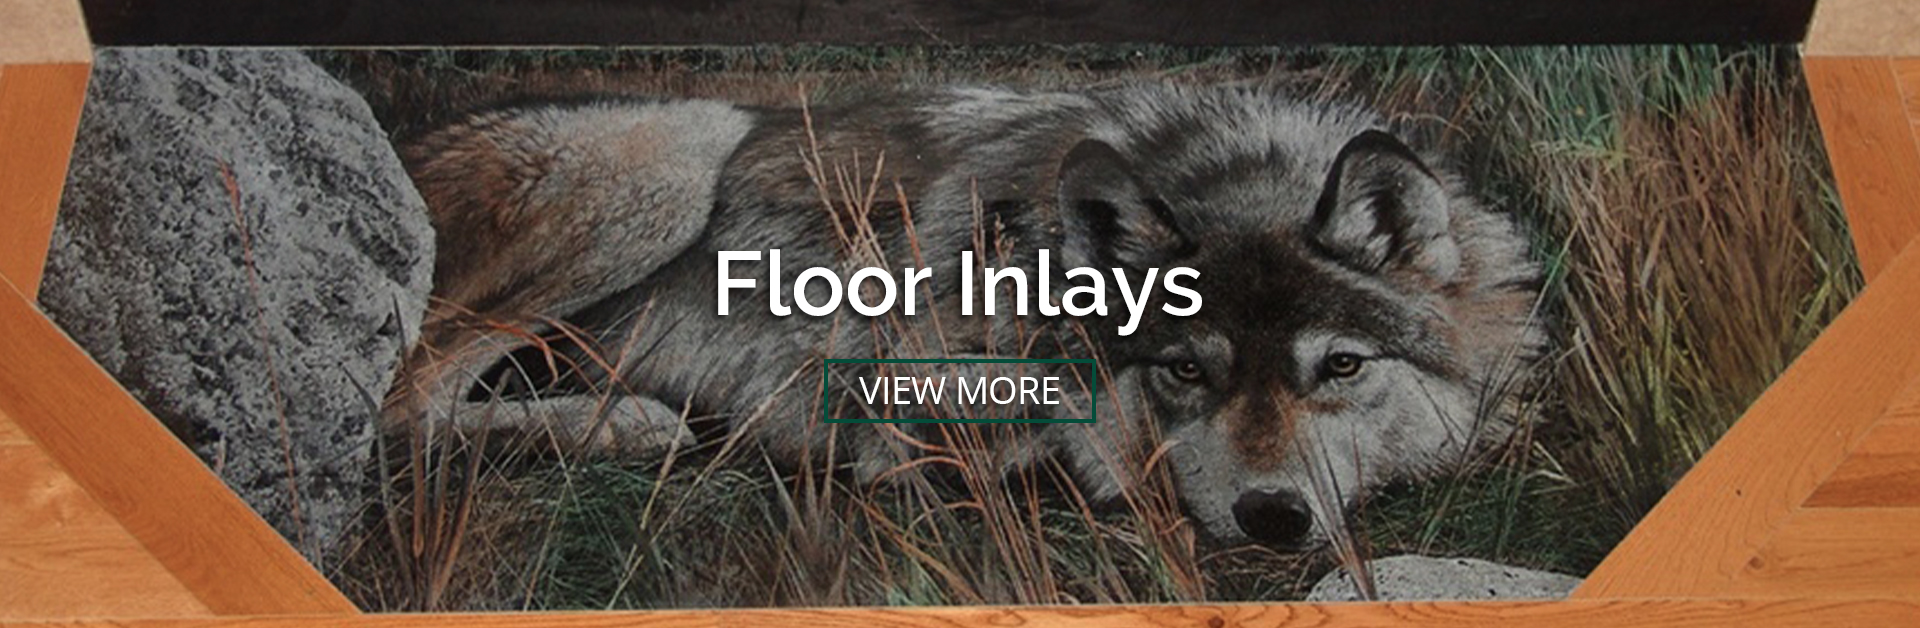 Floor Inlays